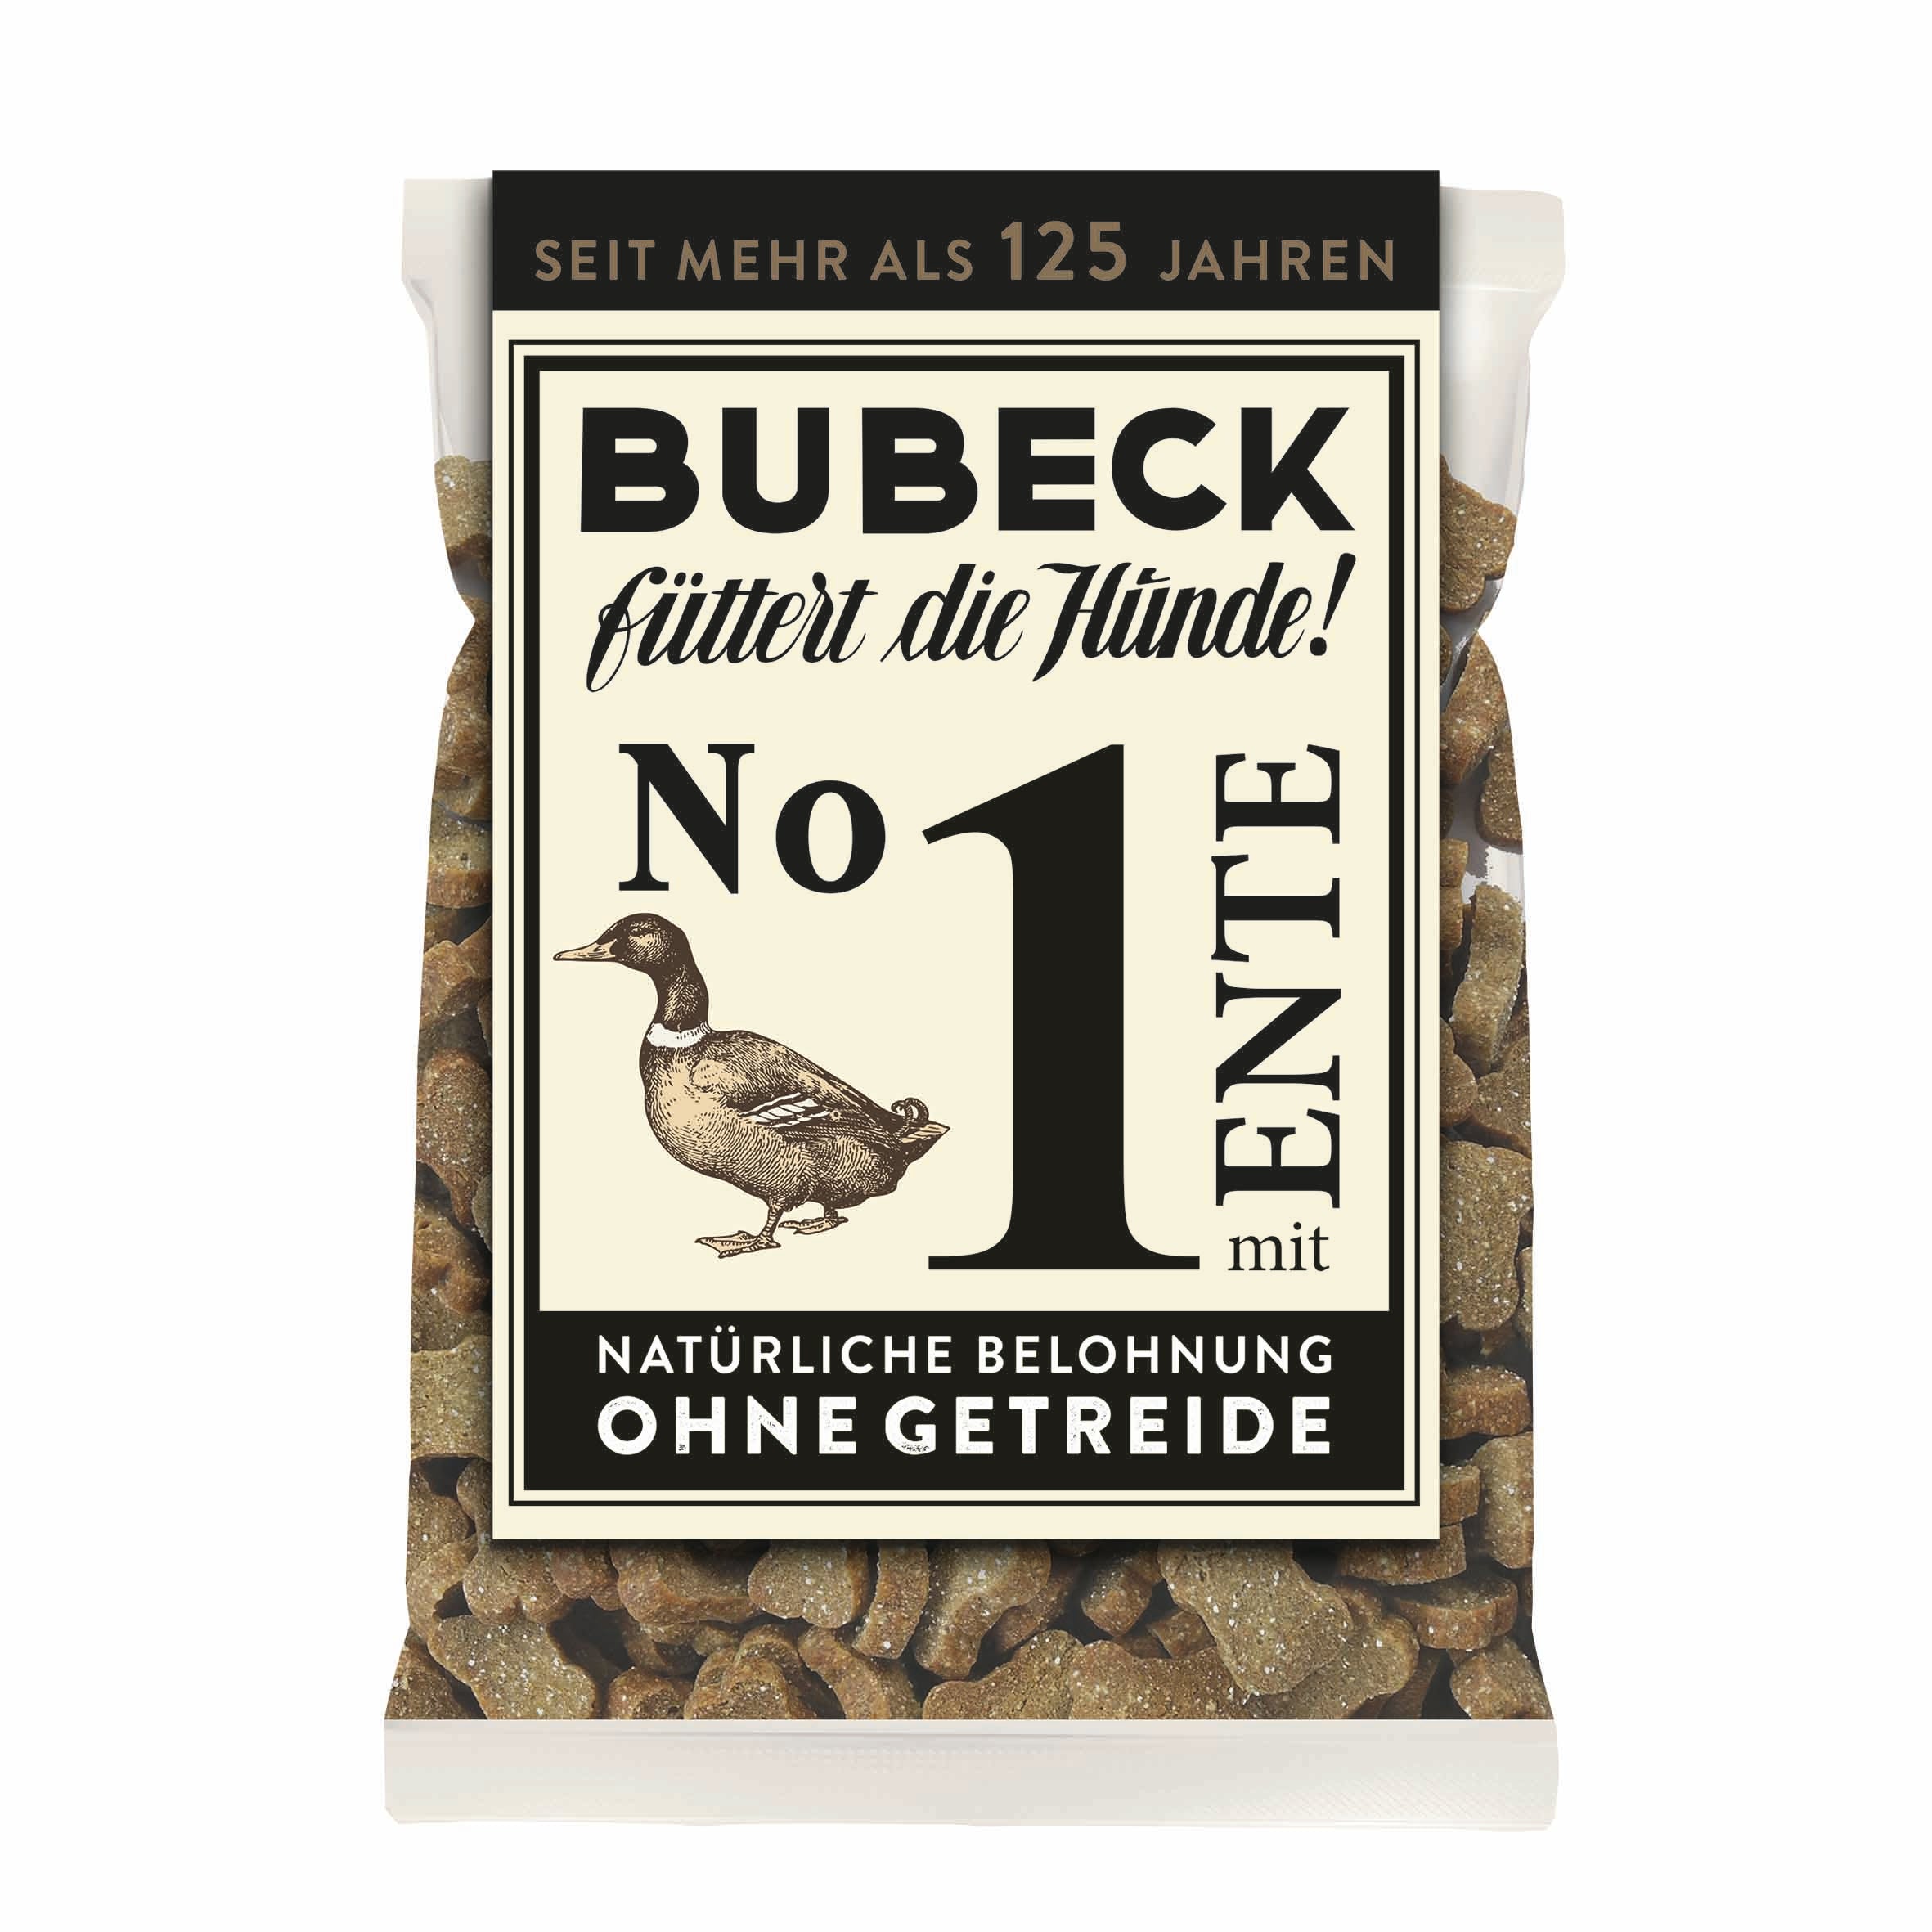 Artikel mit dem Namen Bubeck Snack No1 Ente im Shop von zoo.de , dem Onlineshop für nachhaltiges Hundefutter und Katzenfutter.